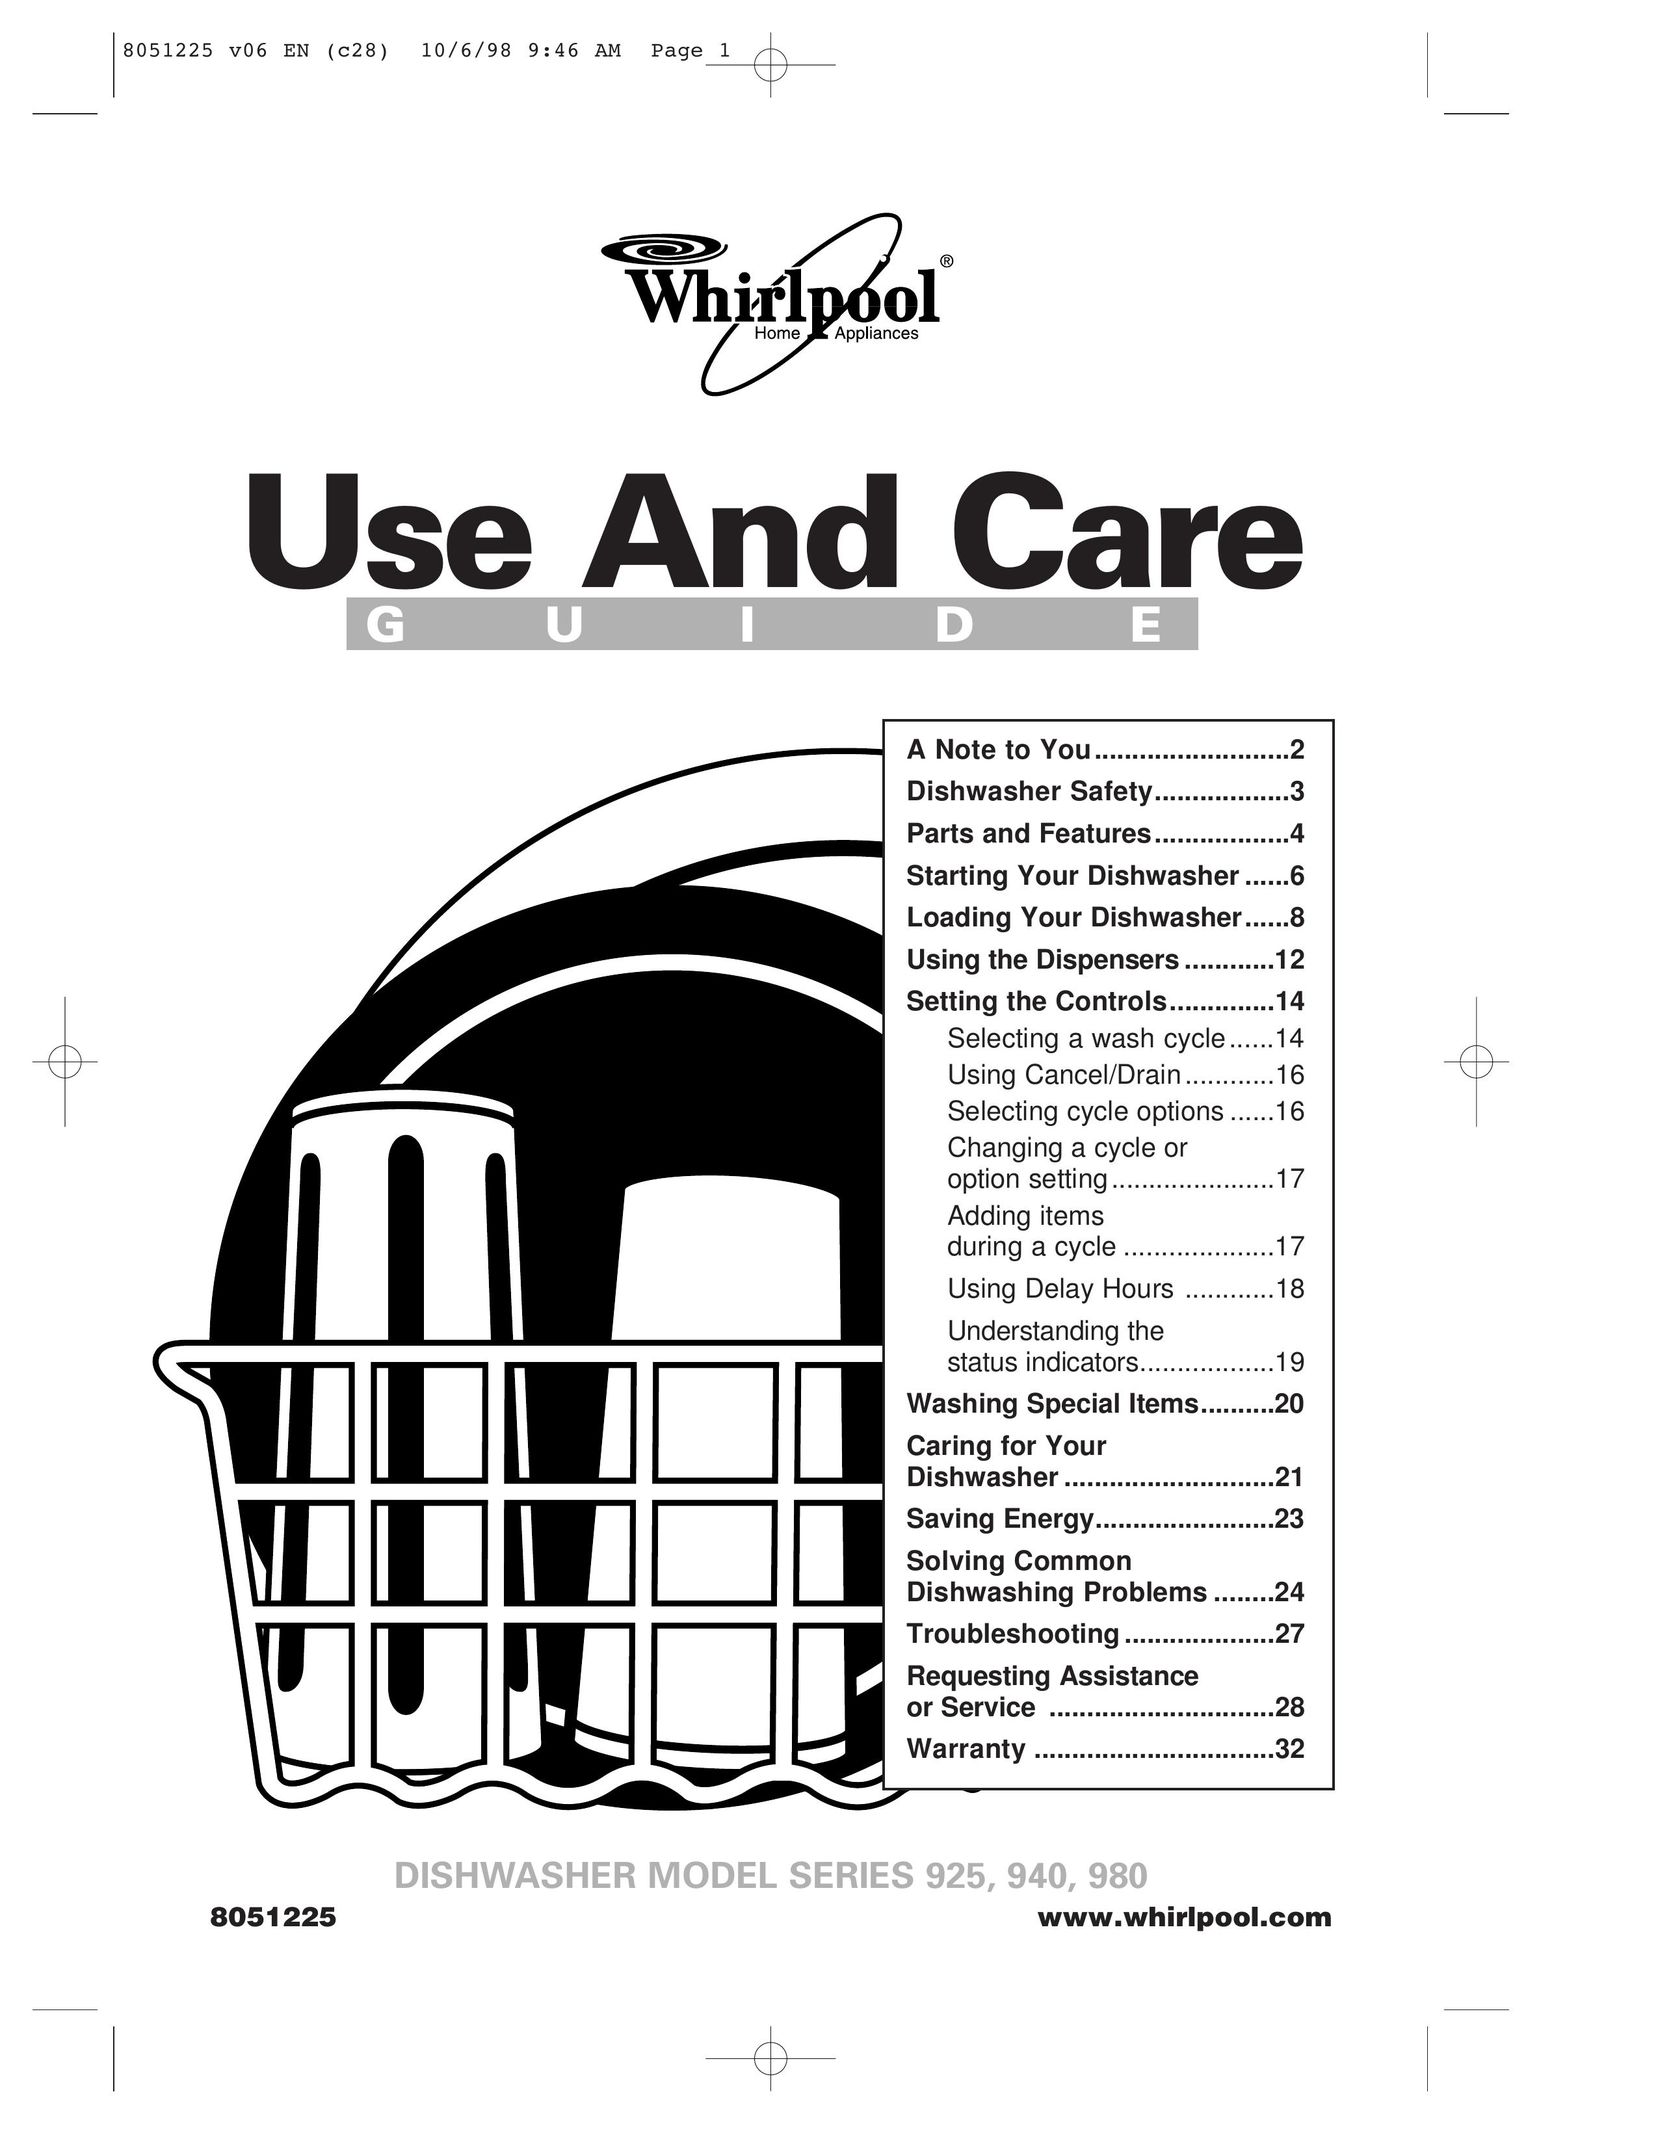 Whirlpool 925 Dishwasher User Manual